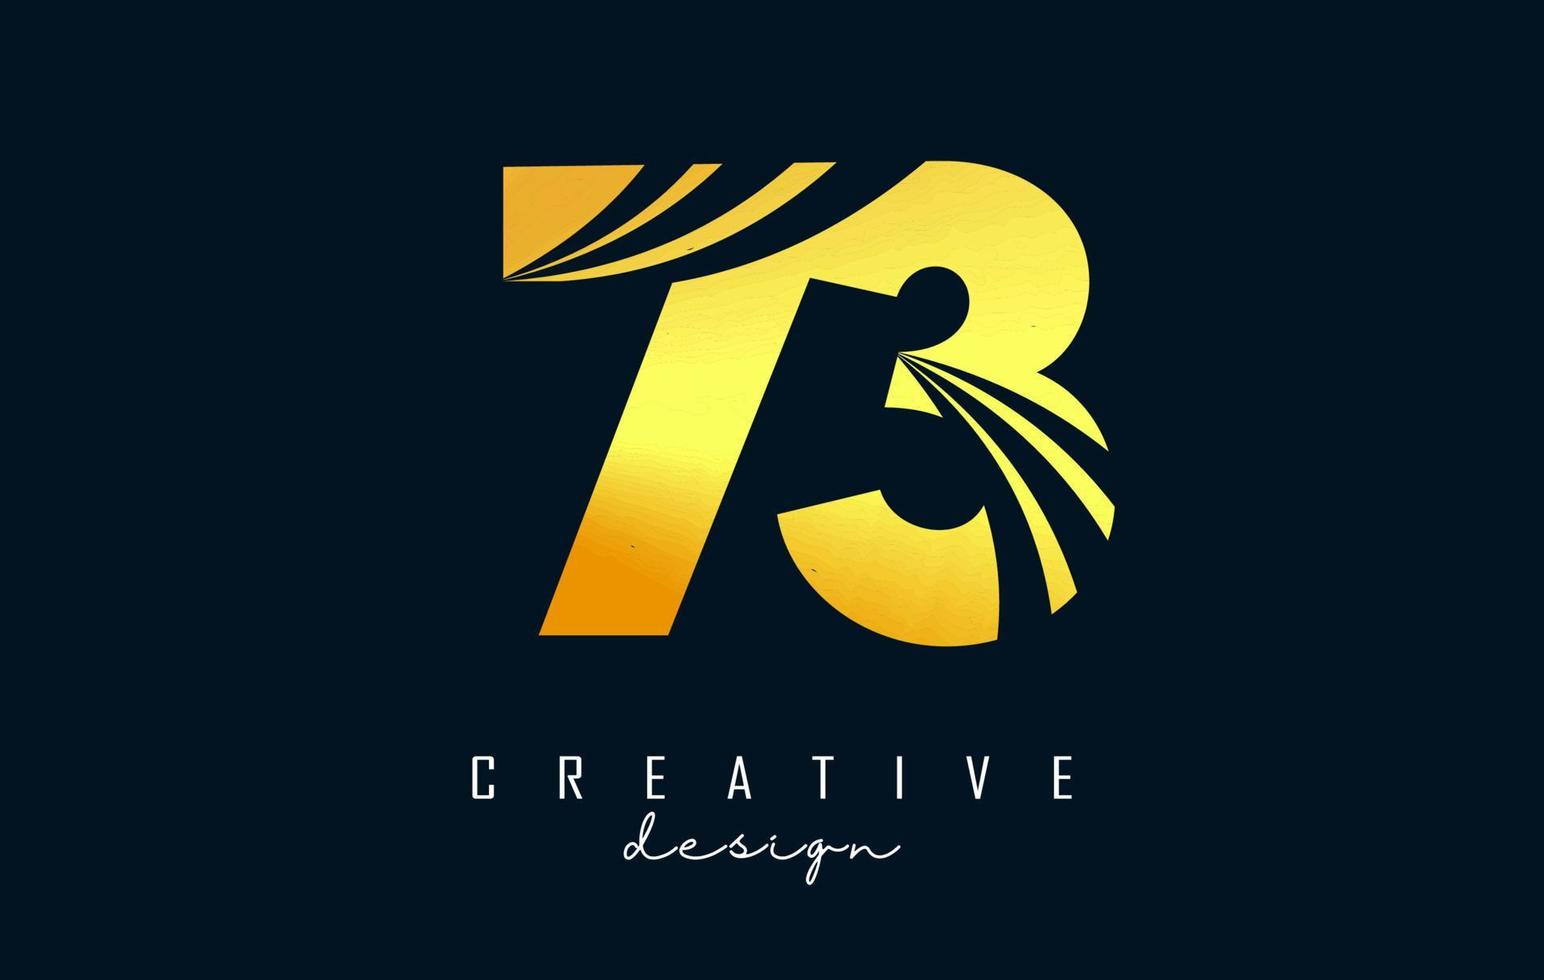 goldenes kreatives nummer 73 7 3 logo mit führenden linien und straßenkonzeptdesign. Nummer mit geometrischem Design. vektor